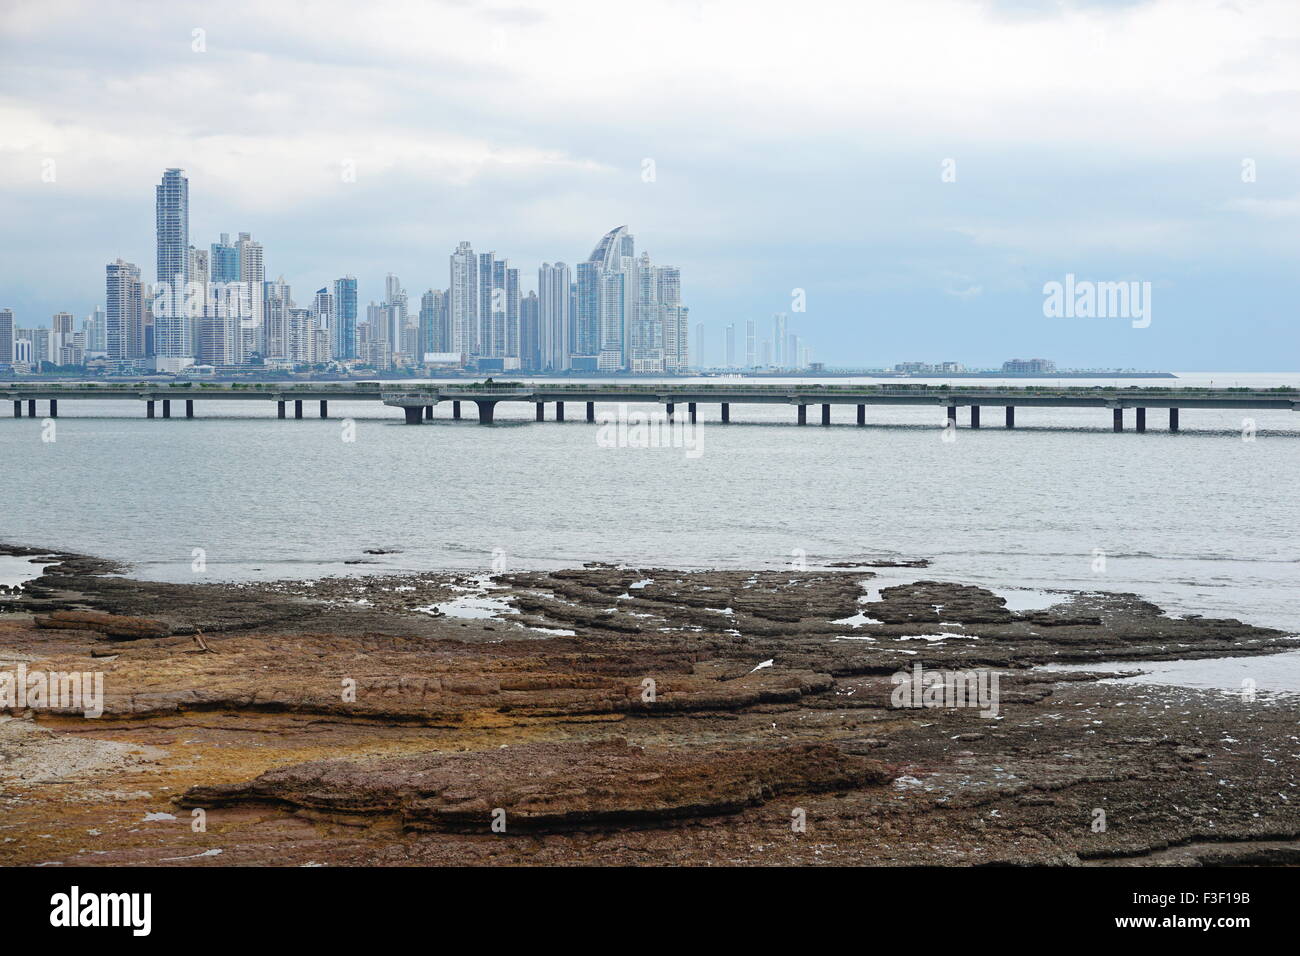 Spiaggia rocciosa in primo piano con la nuova autostrada oltre oceano e grattacieli del centro business della città di Panama, America Centrale Foto Stock